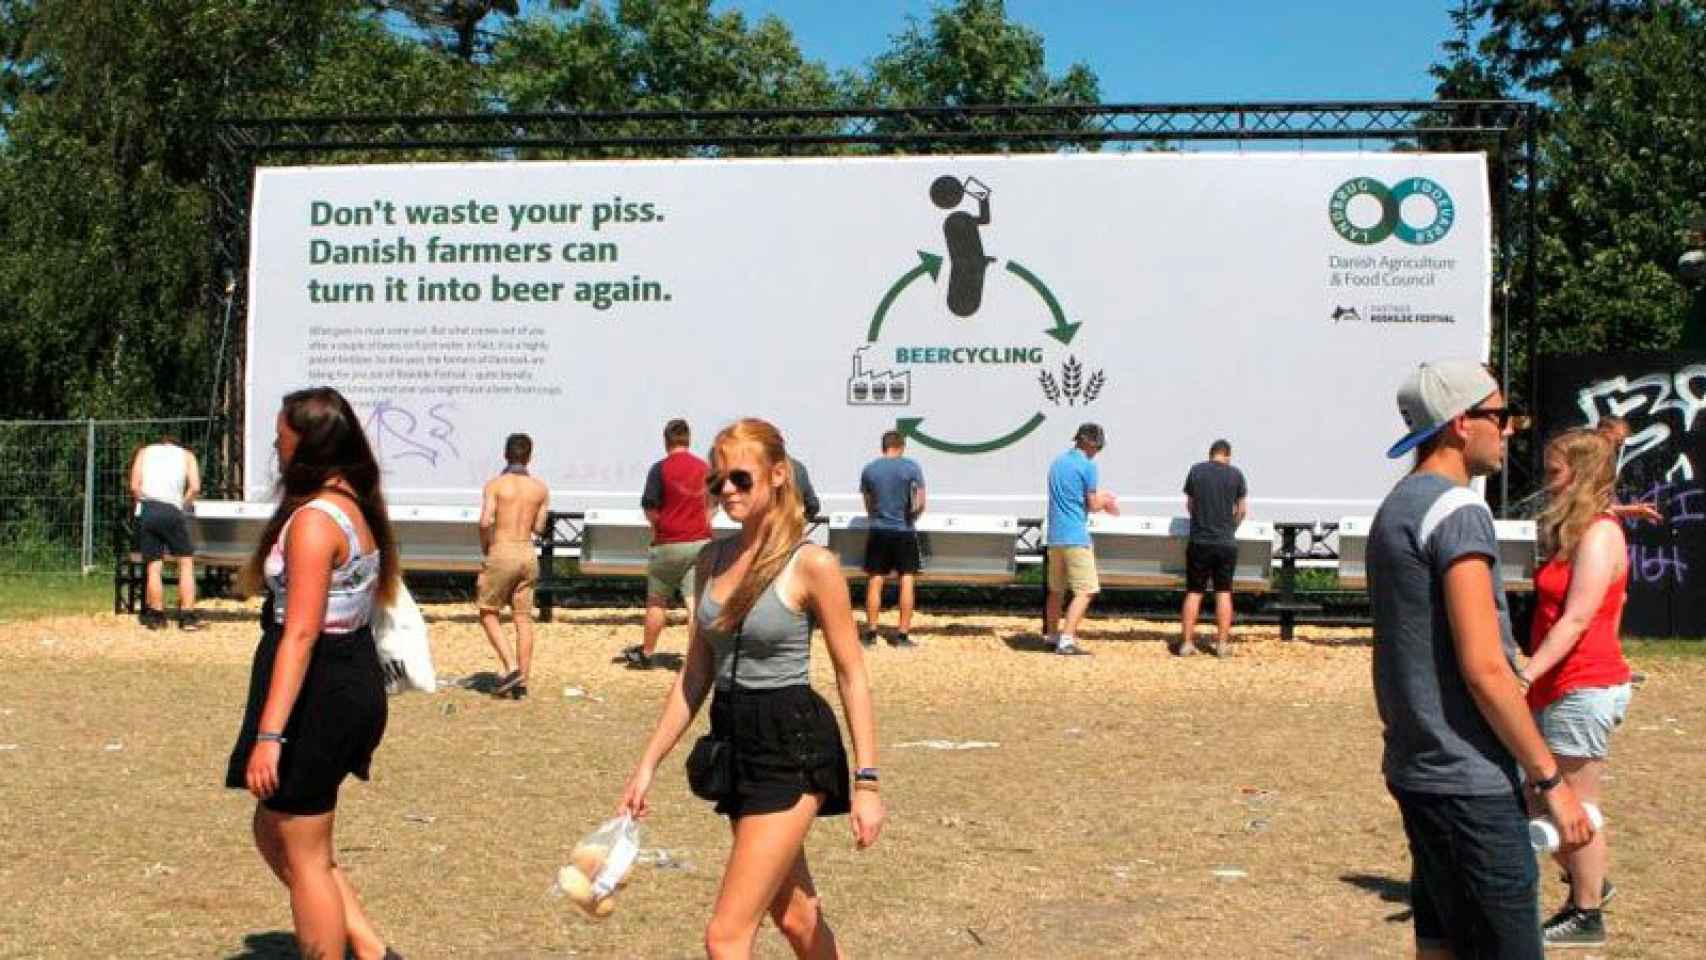 Los jóvenes asistentes al festival Roskilde hacen su aportación al reciclado.